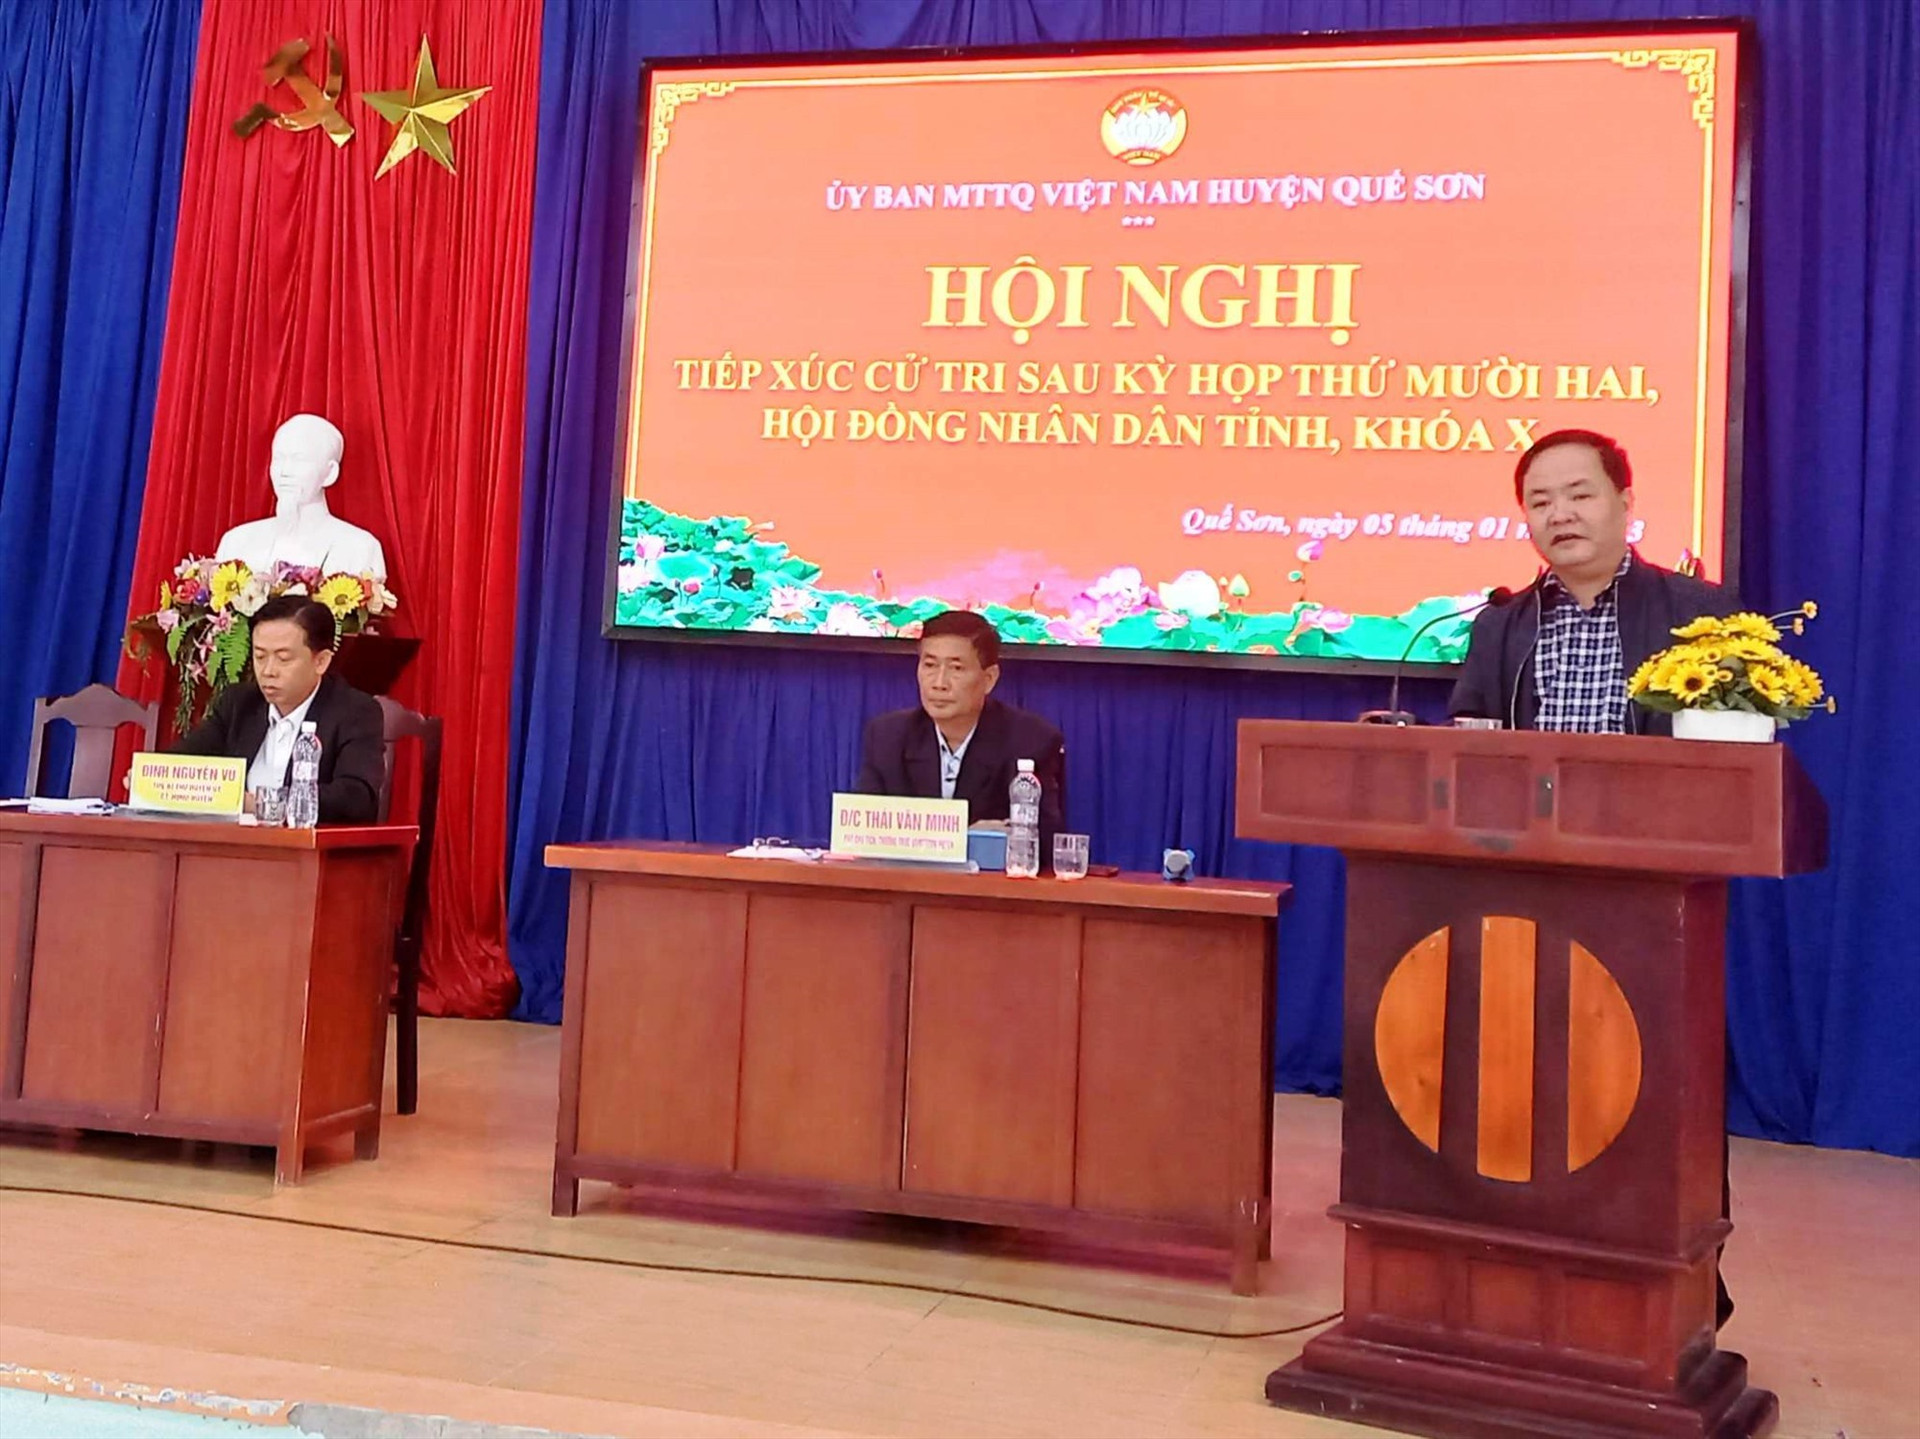 Phó Chủ tịch UBND tỉnh Nguyễn Hồng Quang tiếp thu và giải đáp những kiến nghị của cử tri. Ảnh: D.T